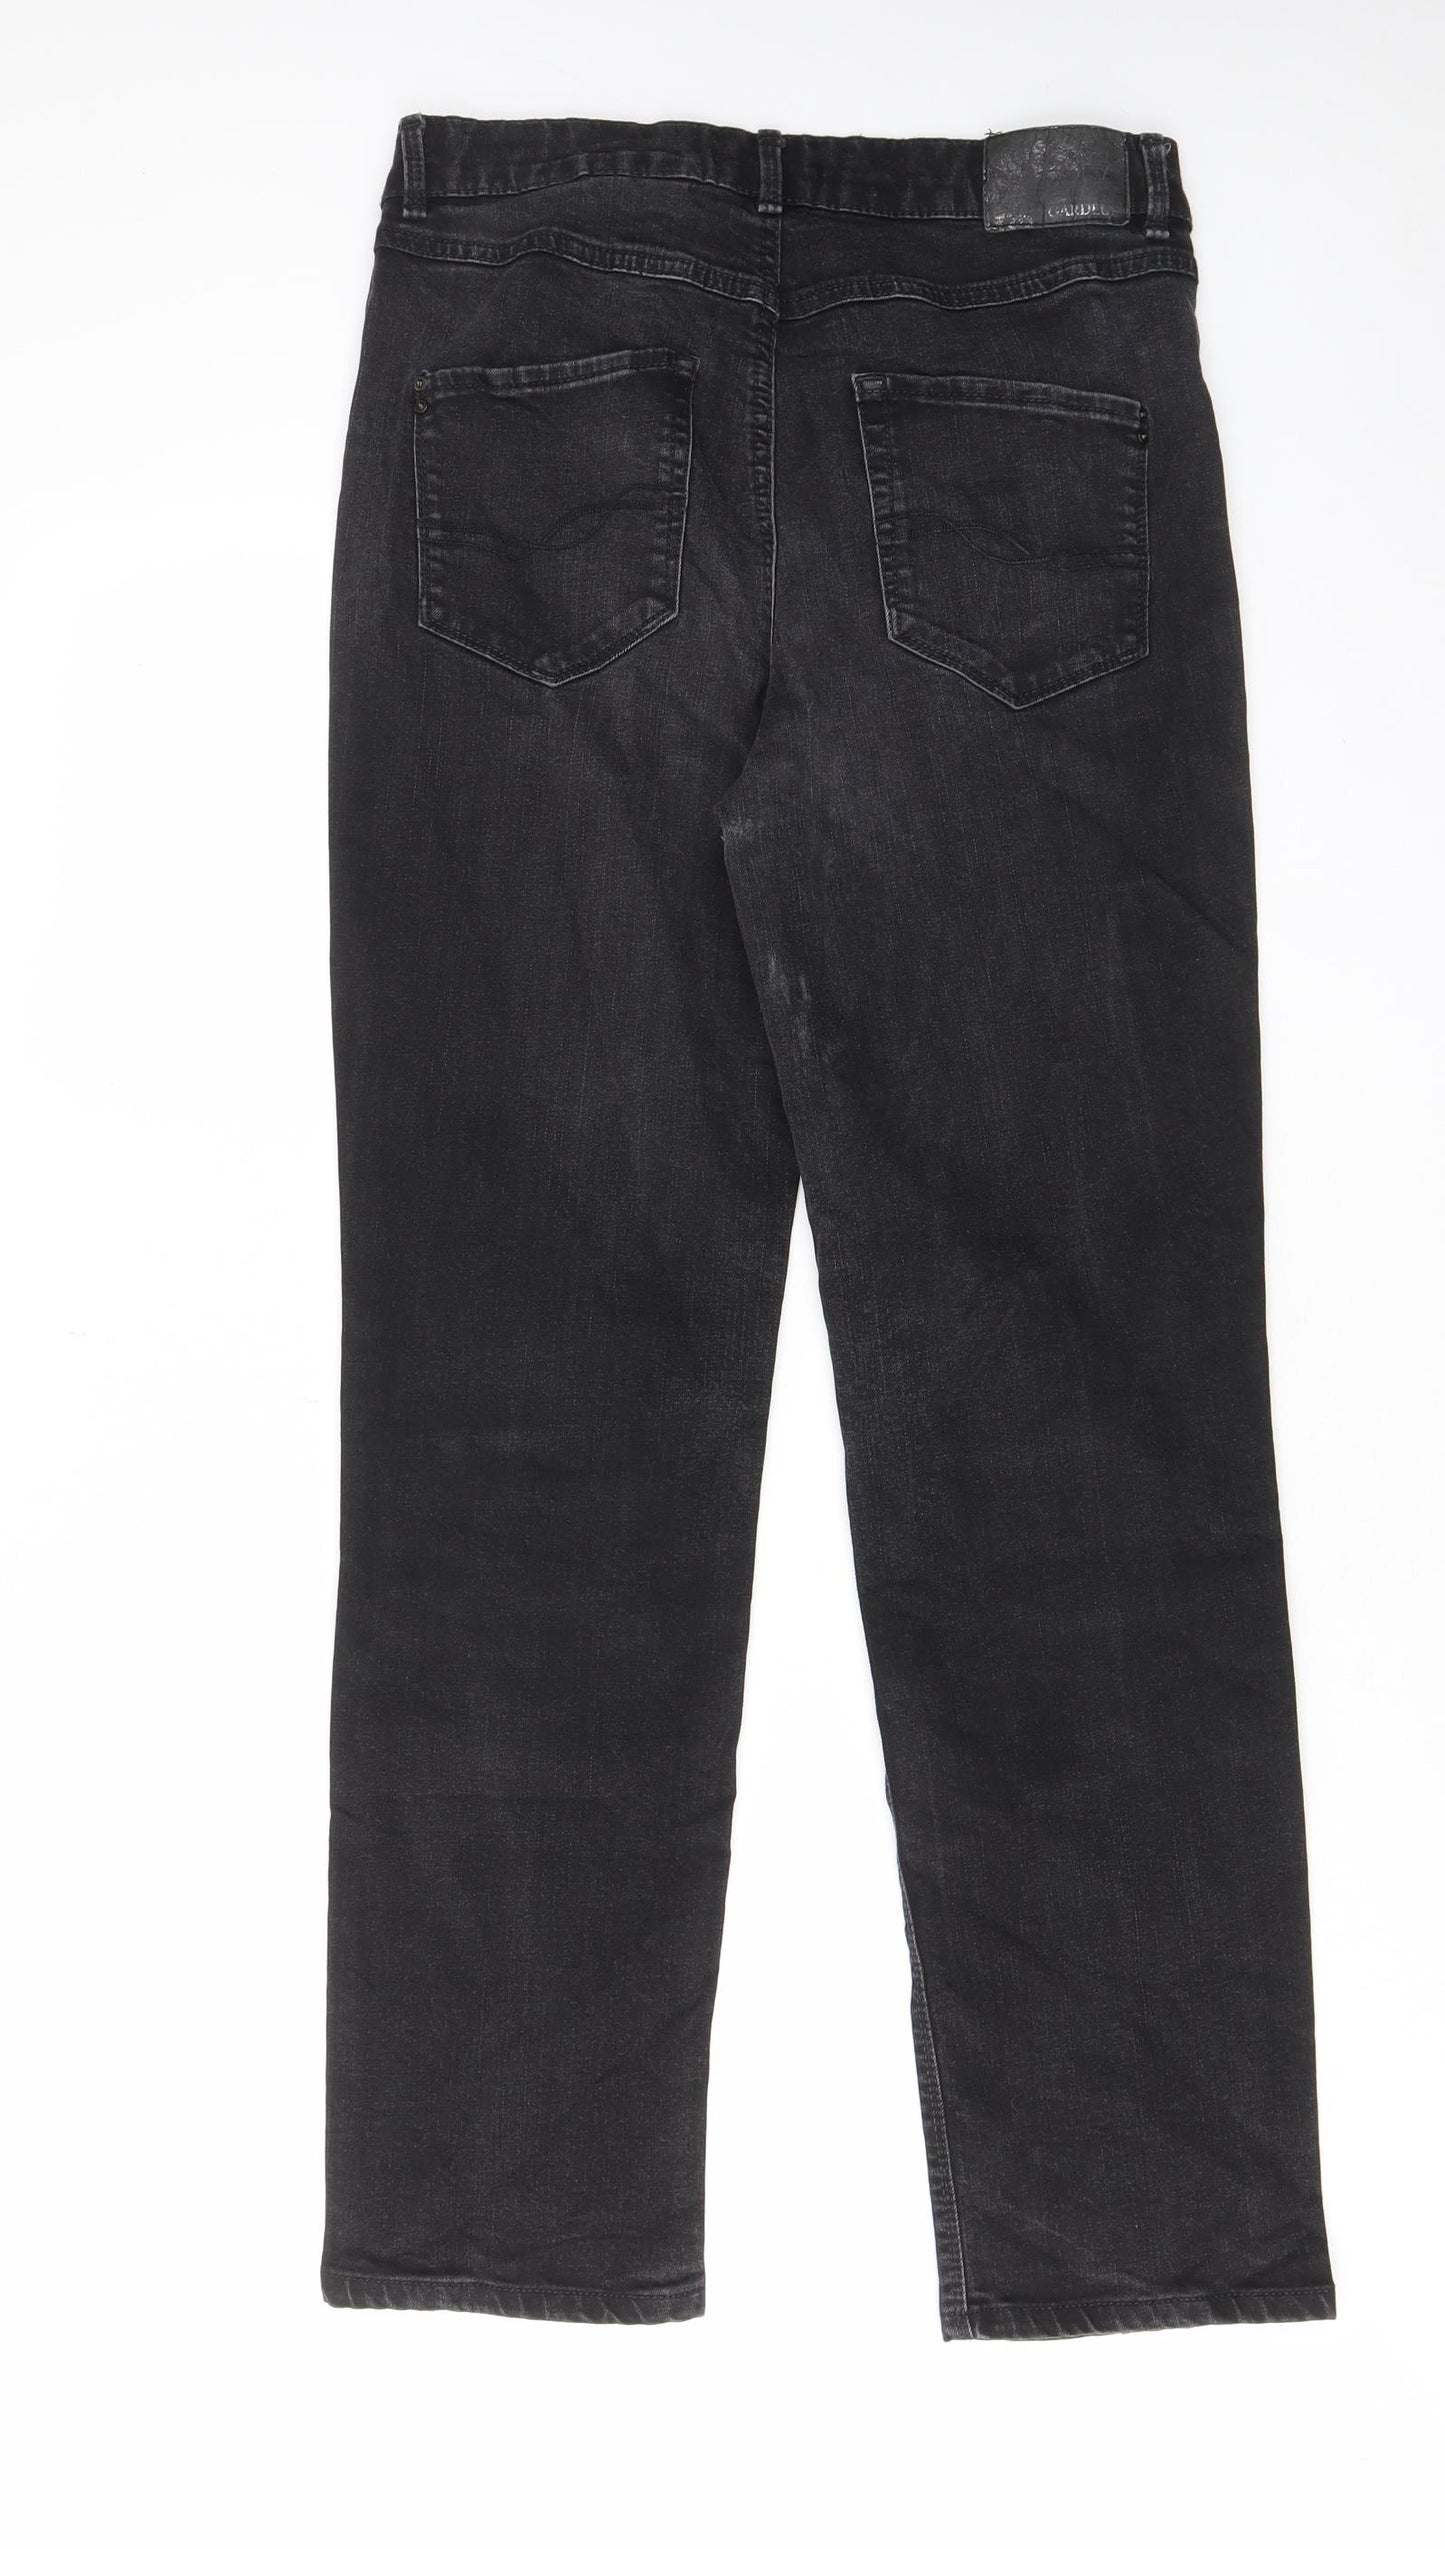 Atelier Gardeur Womens Black Cotton Straight Jeans Size 10 L28 in Regular Zip - Pockets, Belt Loops